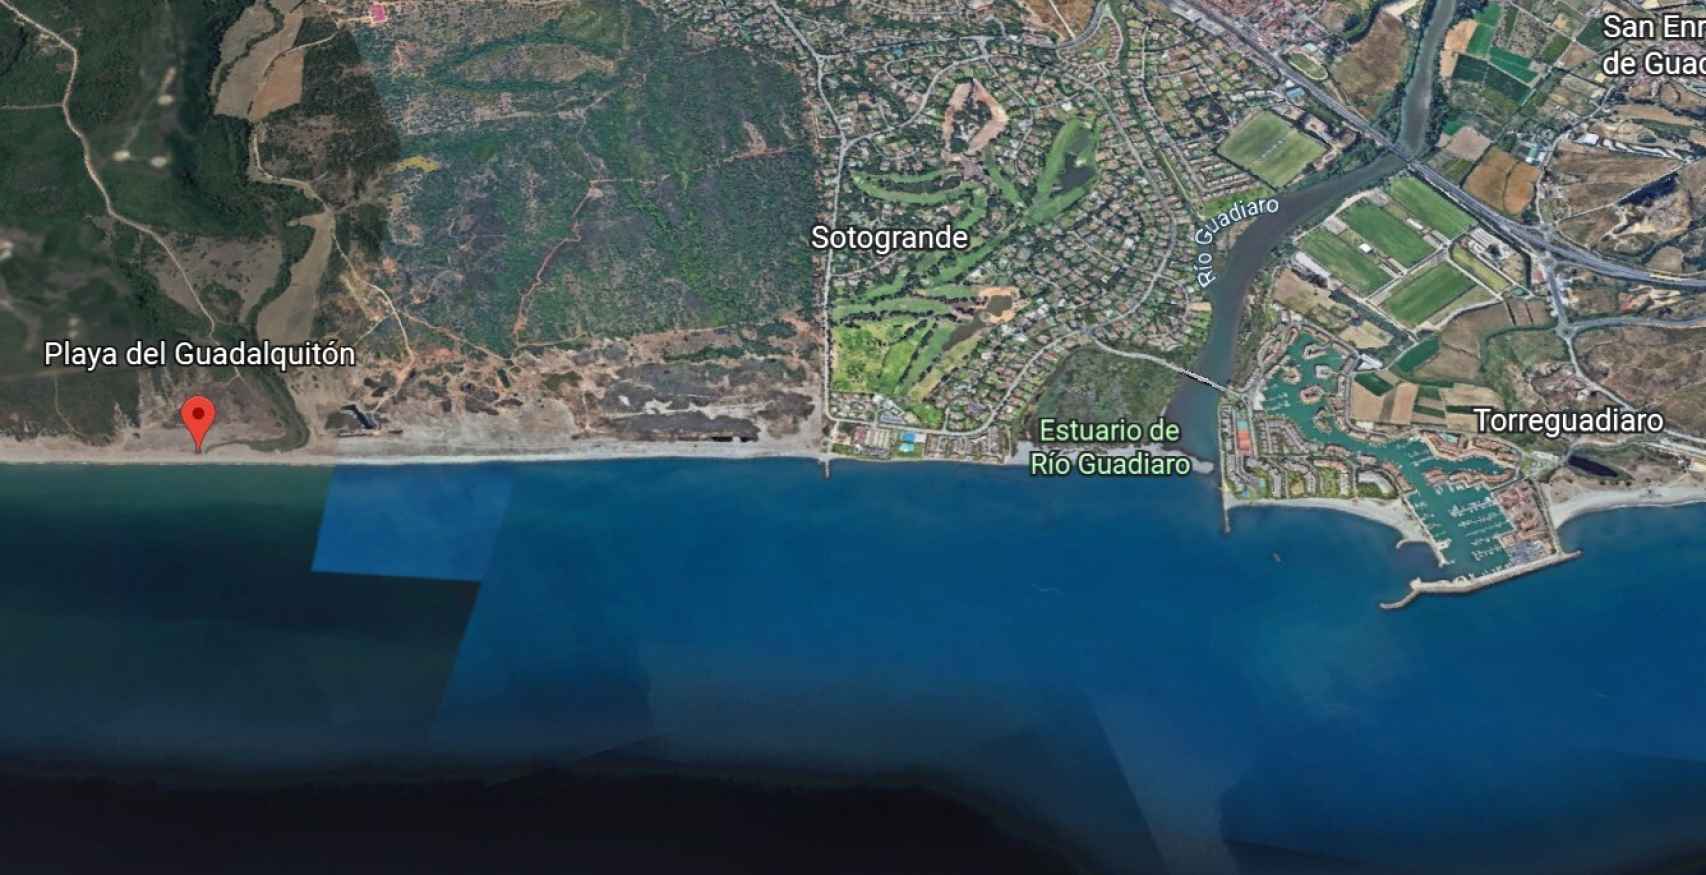 Vista aérea de la playa de Guadalquitón, Sotogrande y el puerto deportivo.